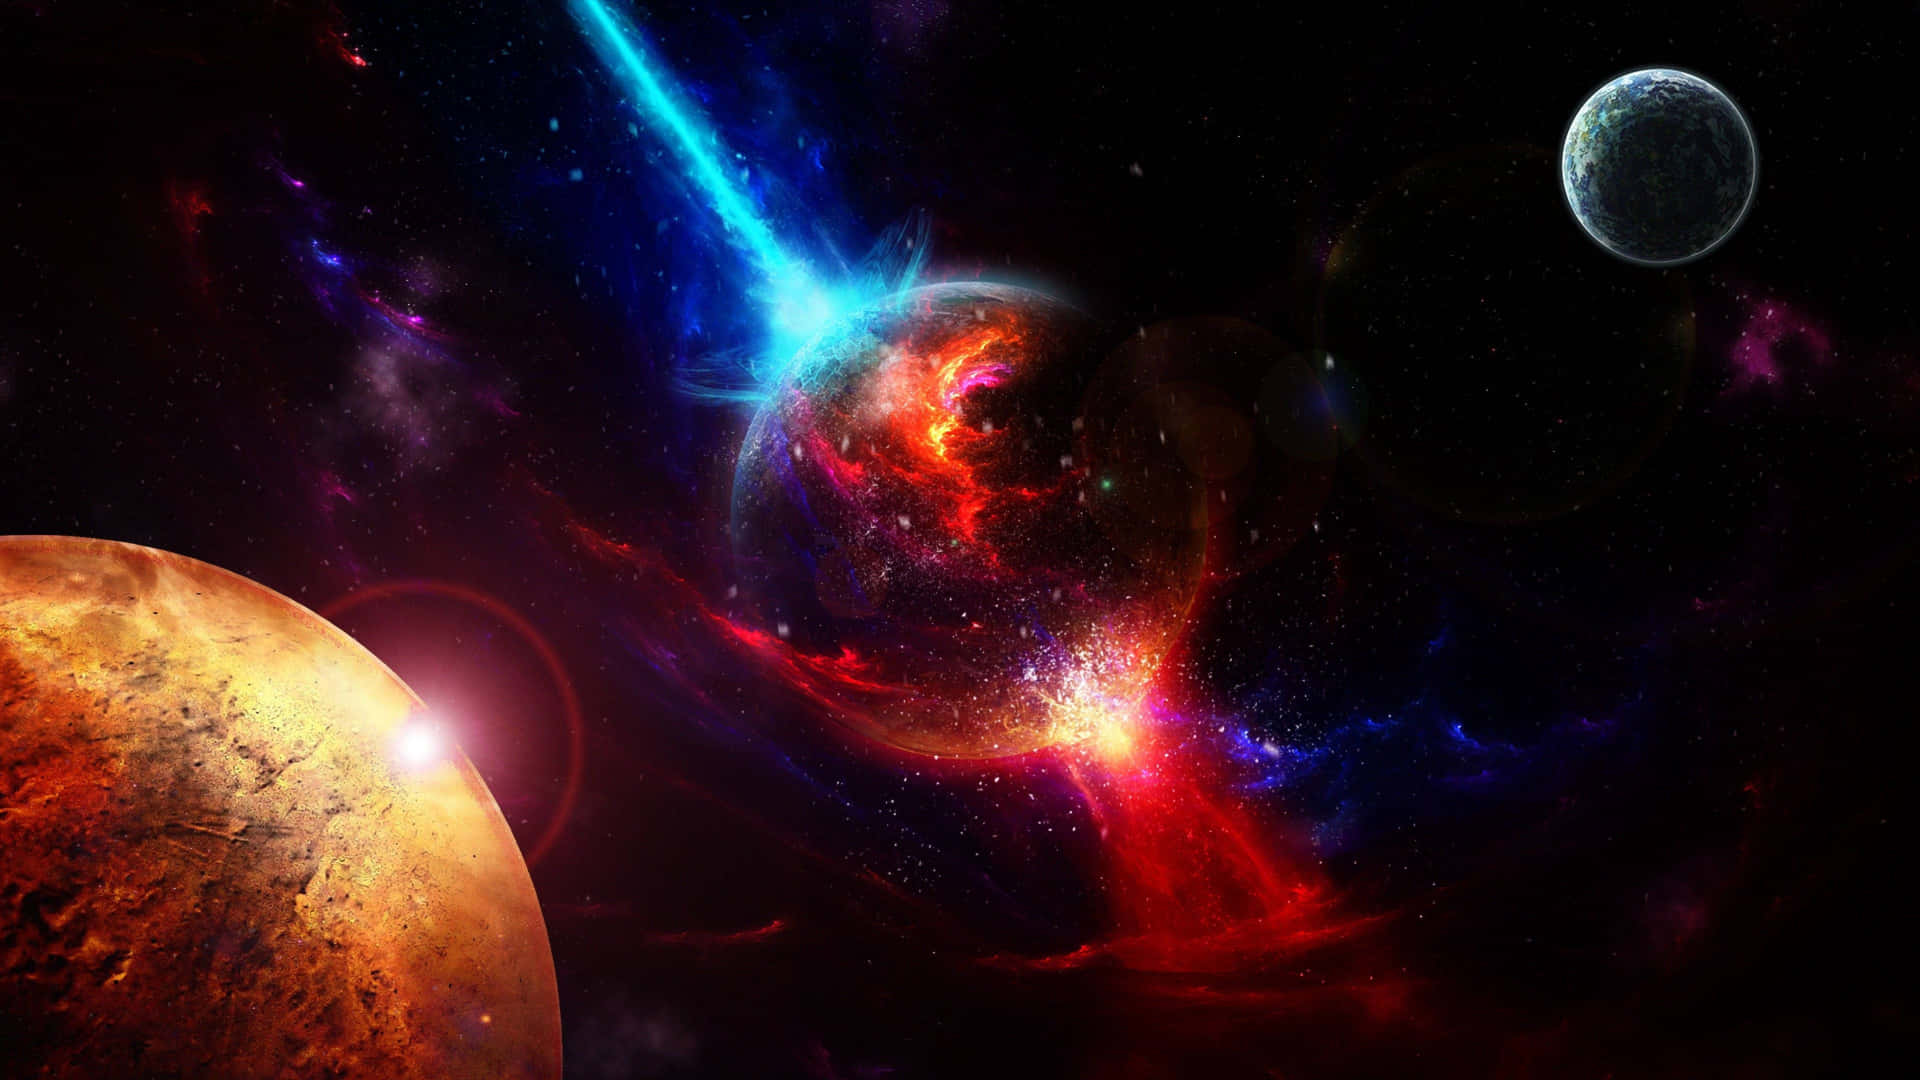 nubela hd space galaxy explosion